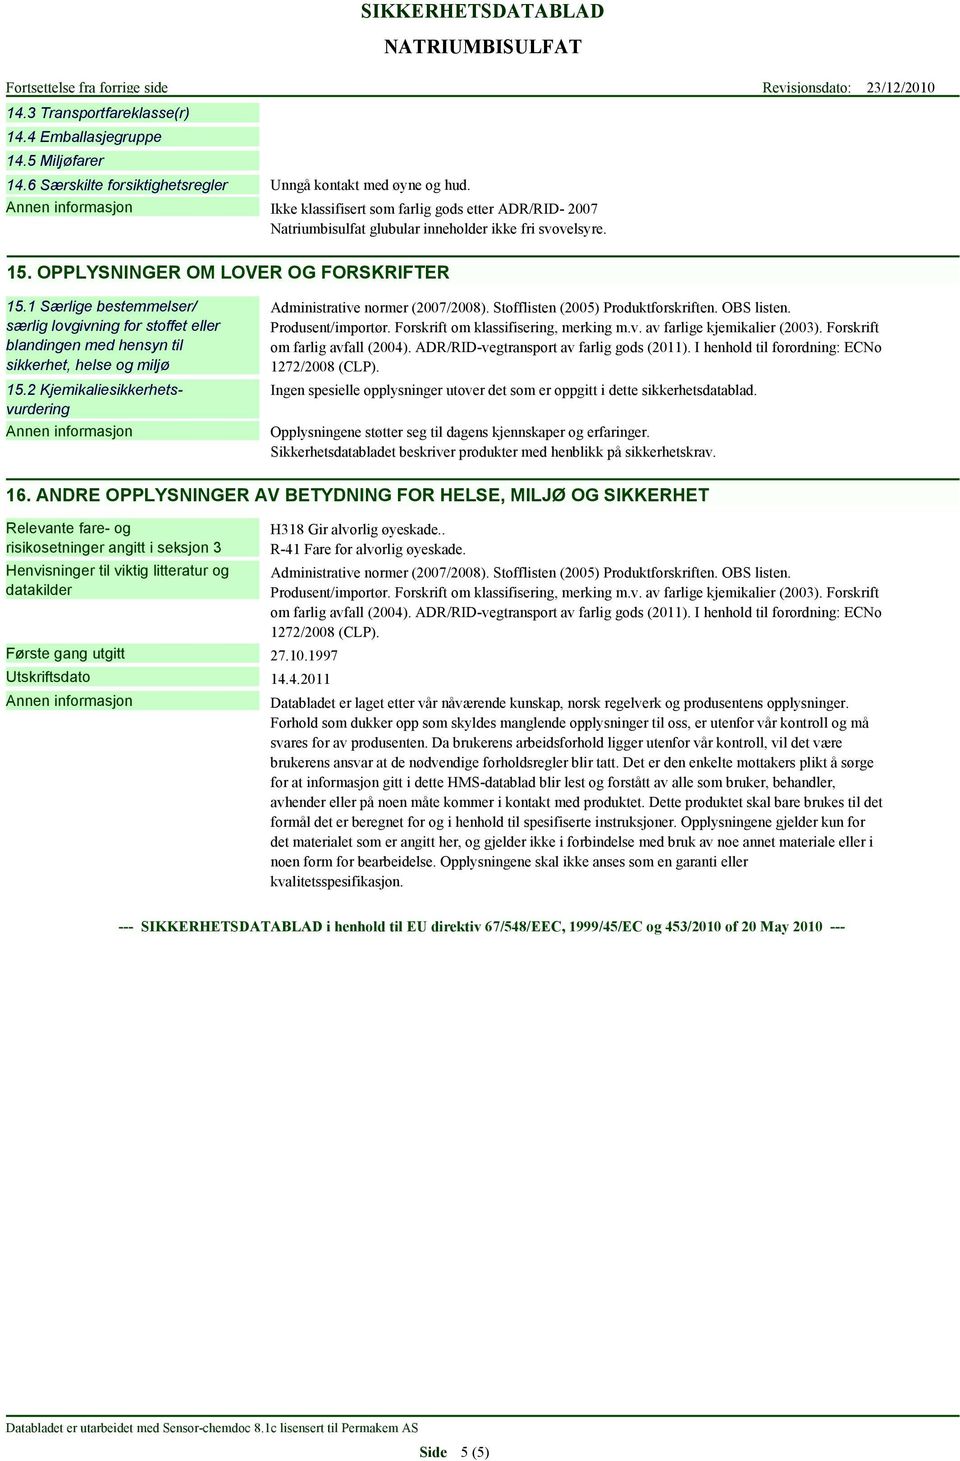 1 Særlige bestemmelser/ særlig lovgivning for stoffet eller blandingen med hensyn til sikkerhet, helse og miljø 15.2 Kjemikaliesikkerhetsvurdering Administrative normer (2007/2008).